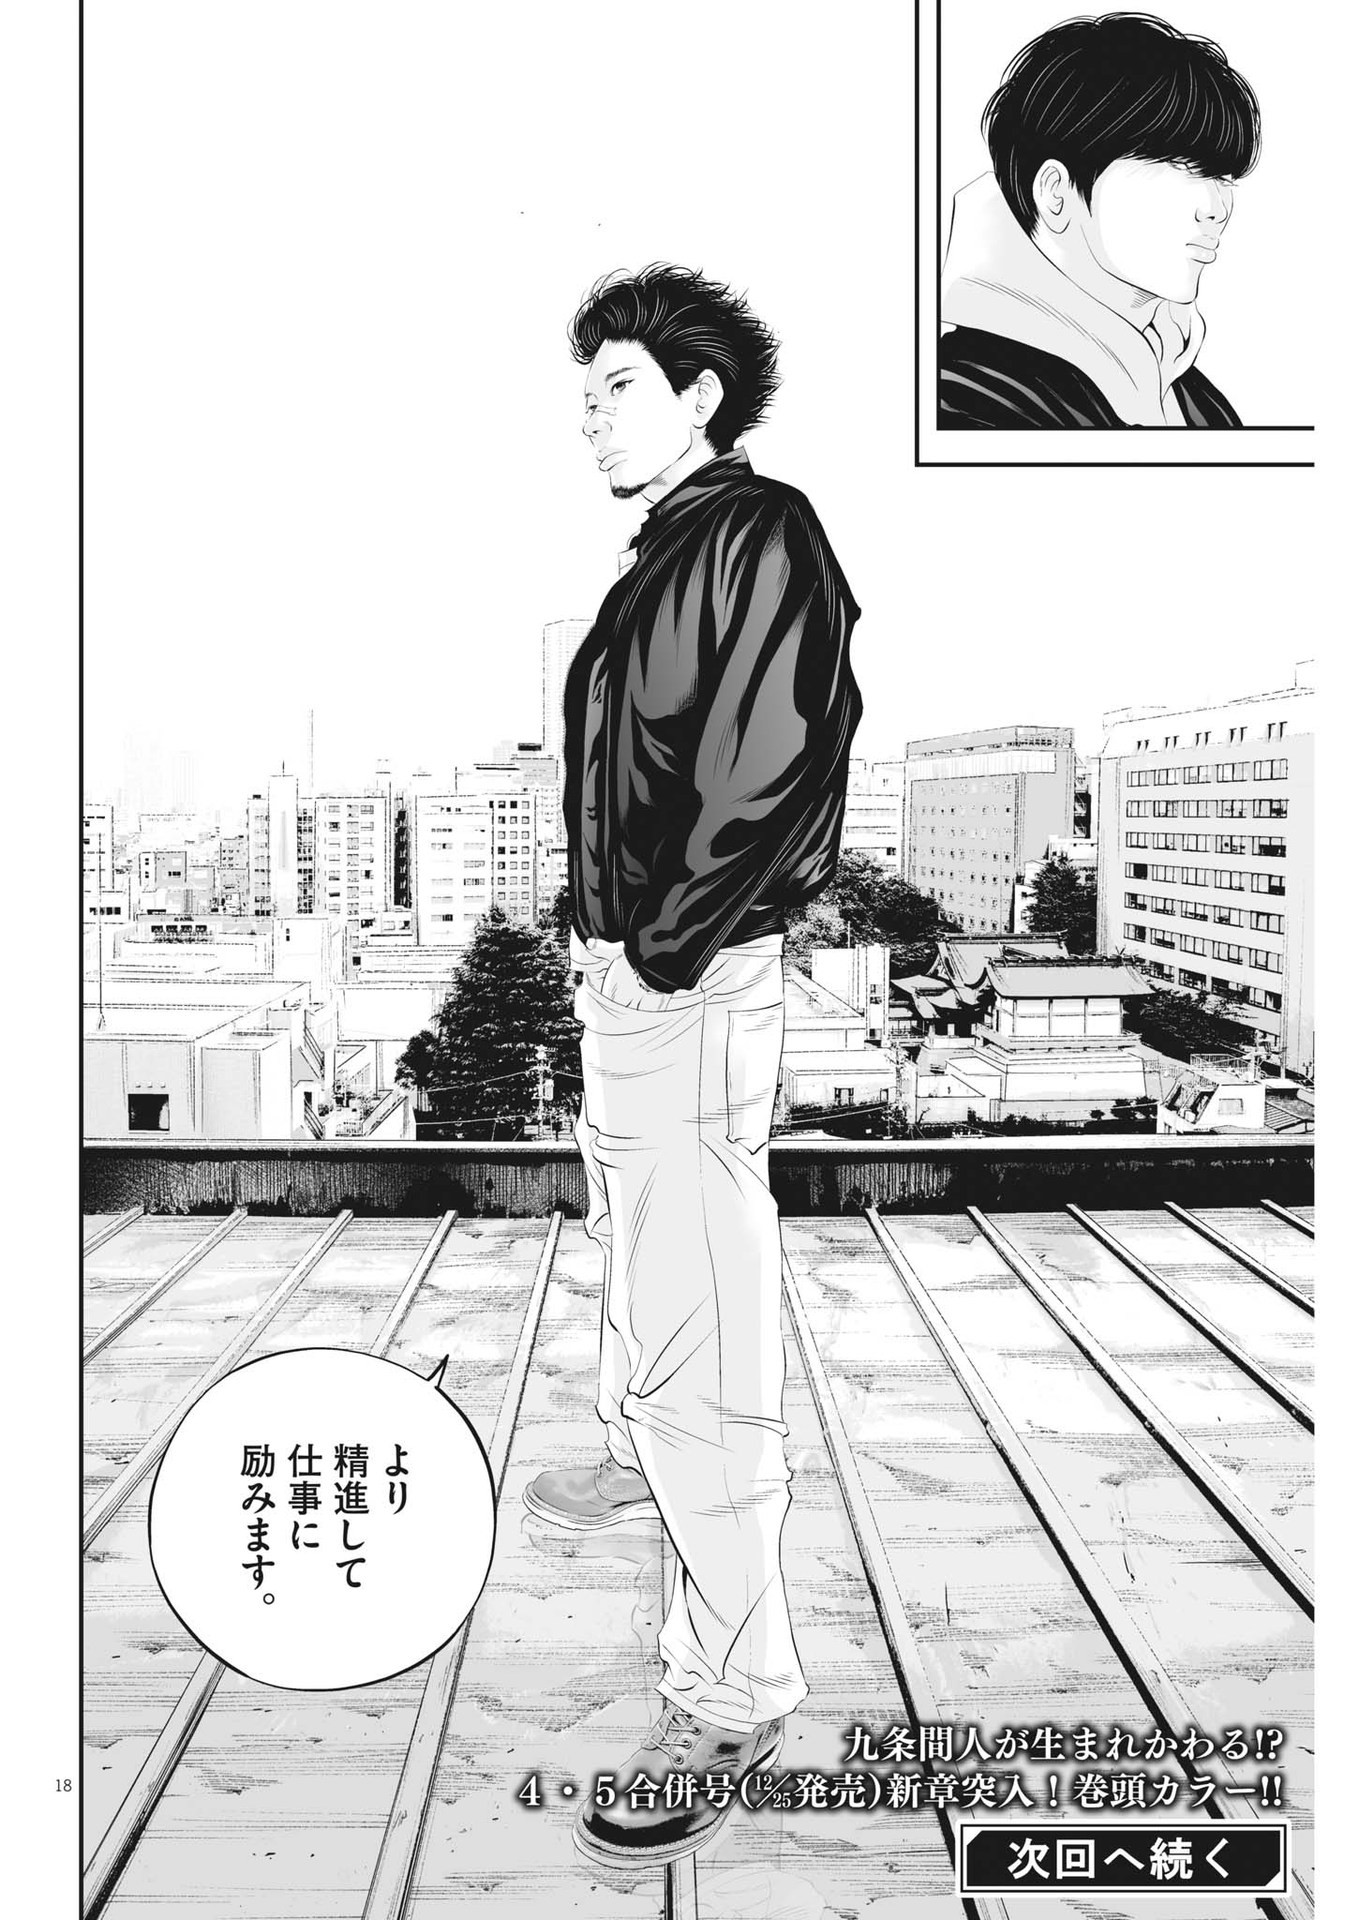 Kujou no Taizai - Chapter 91 - Page 18